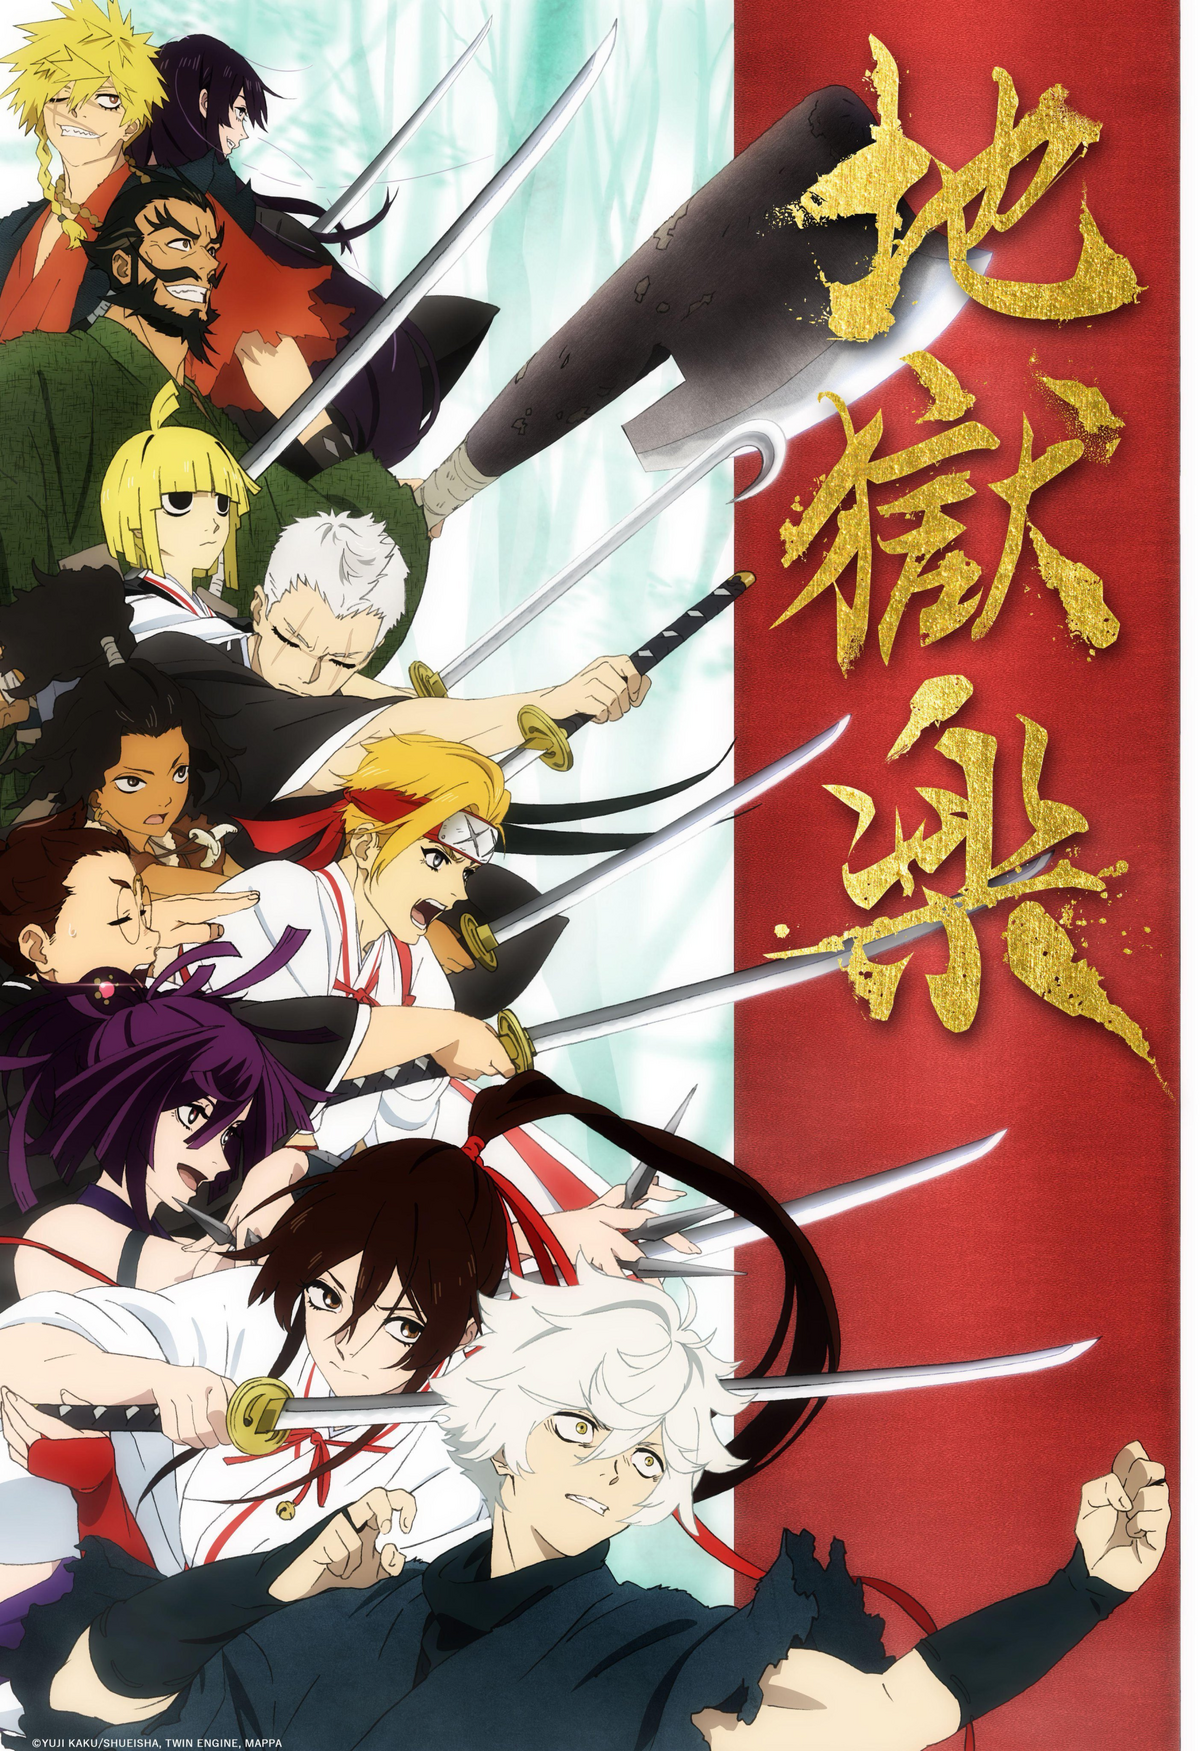 Wallpaper : anime girls, Hell's Paradise Jigokuraku 1766x1000 -  rozakperfect1 - 2245298 - HD Wallpapers - WallHere